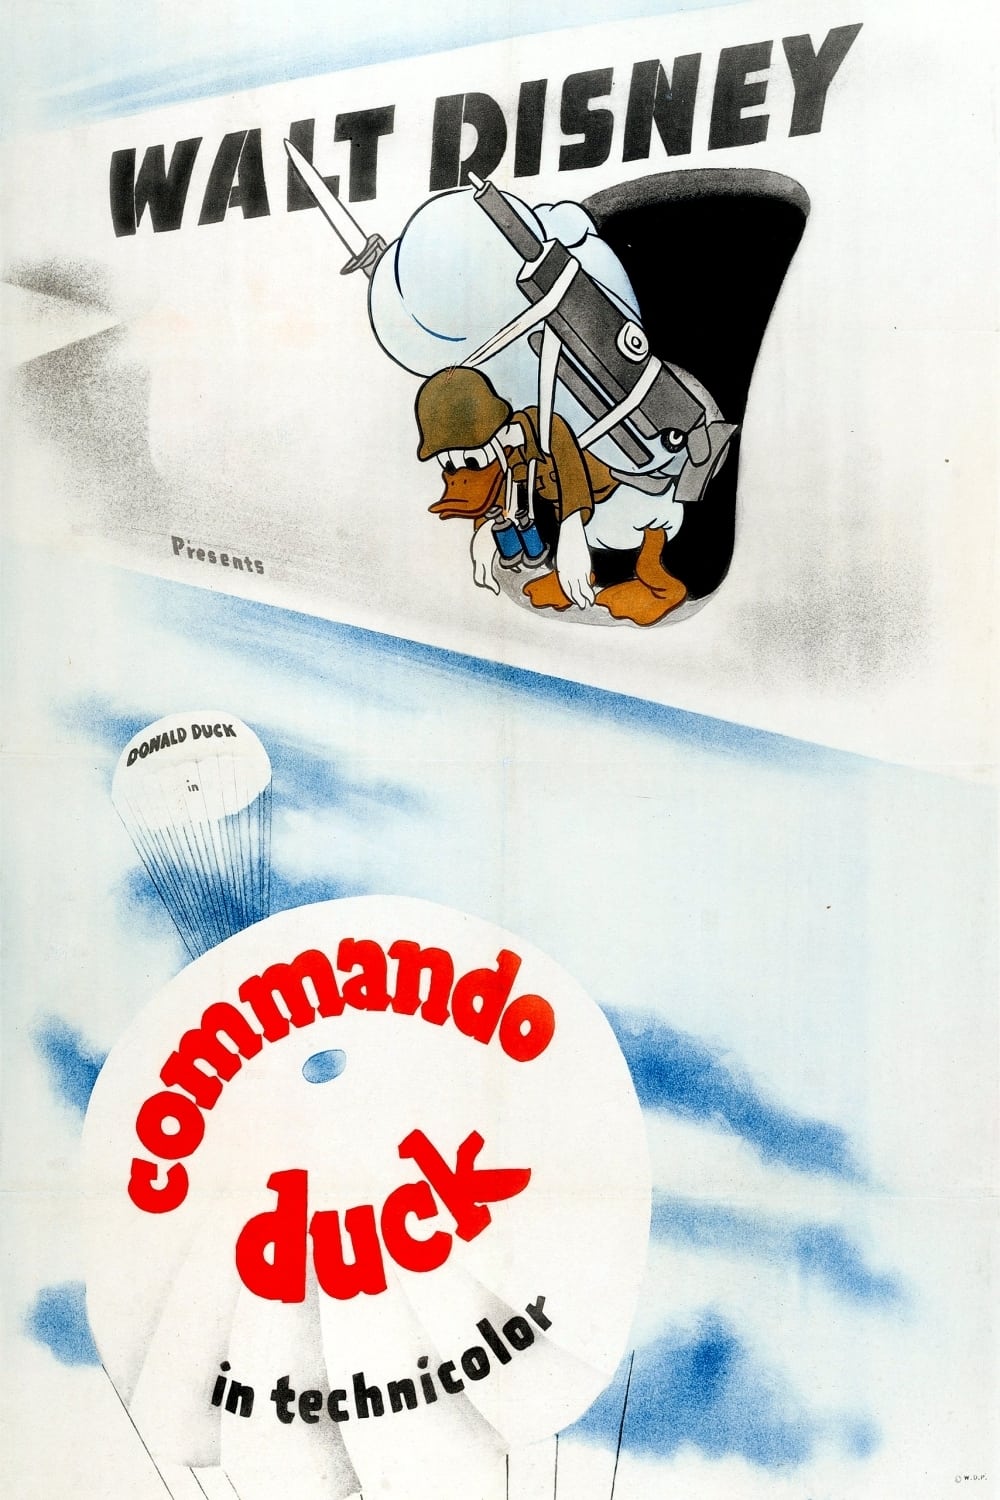 Commando Duck (1944)